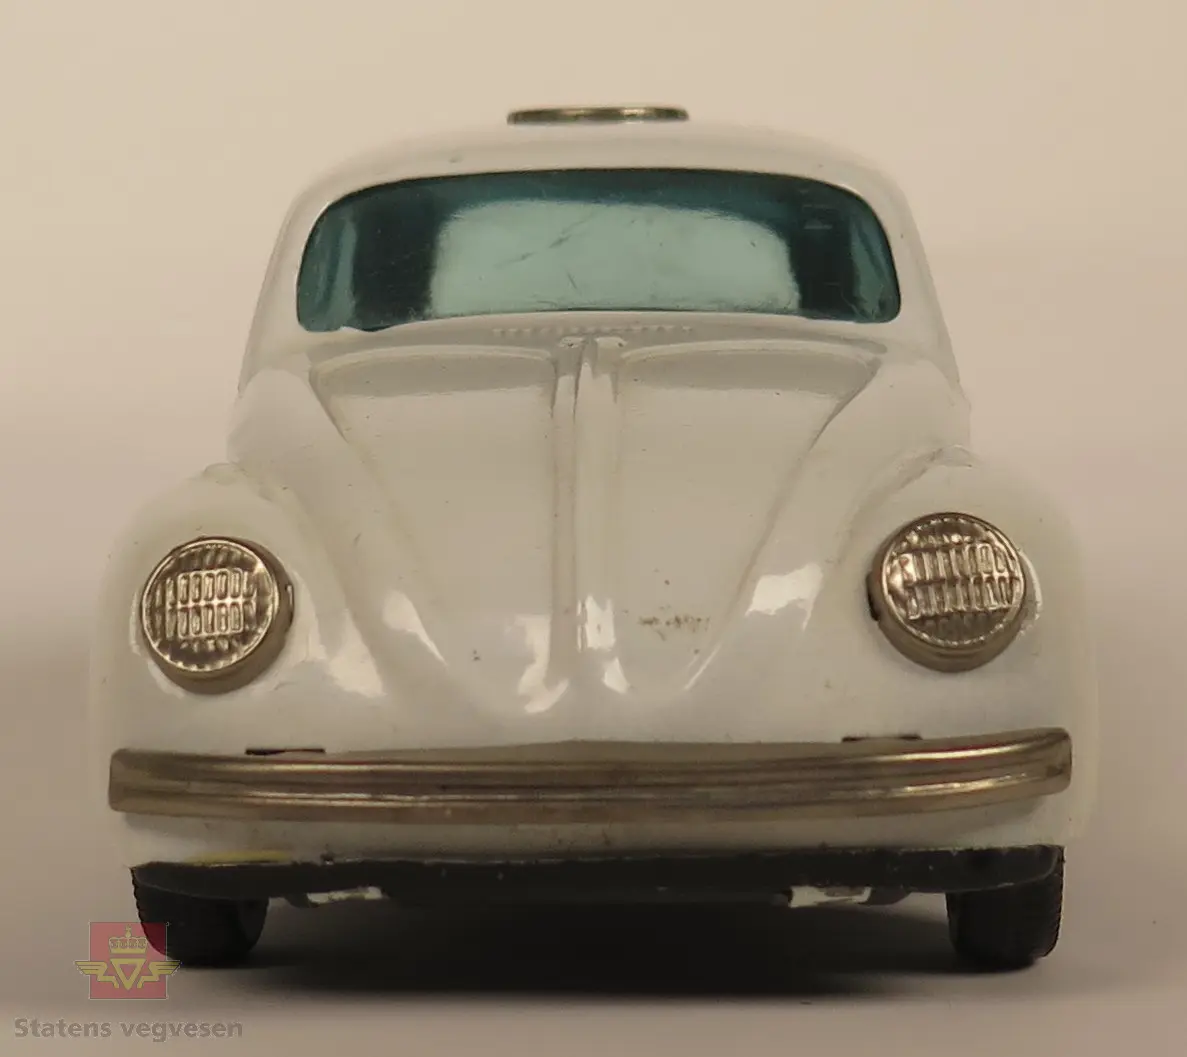 Hvit Volkswagen beetle laget av tinn. Skala: 1/48